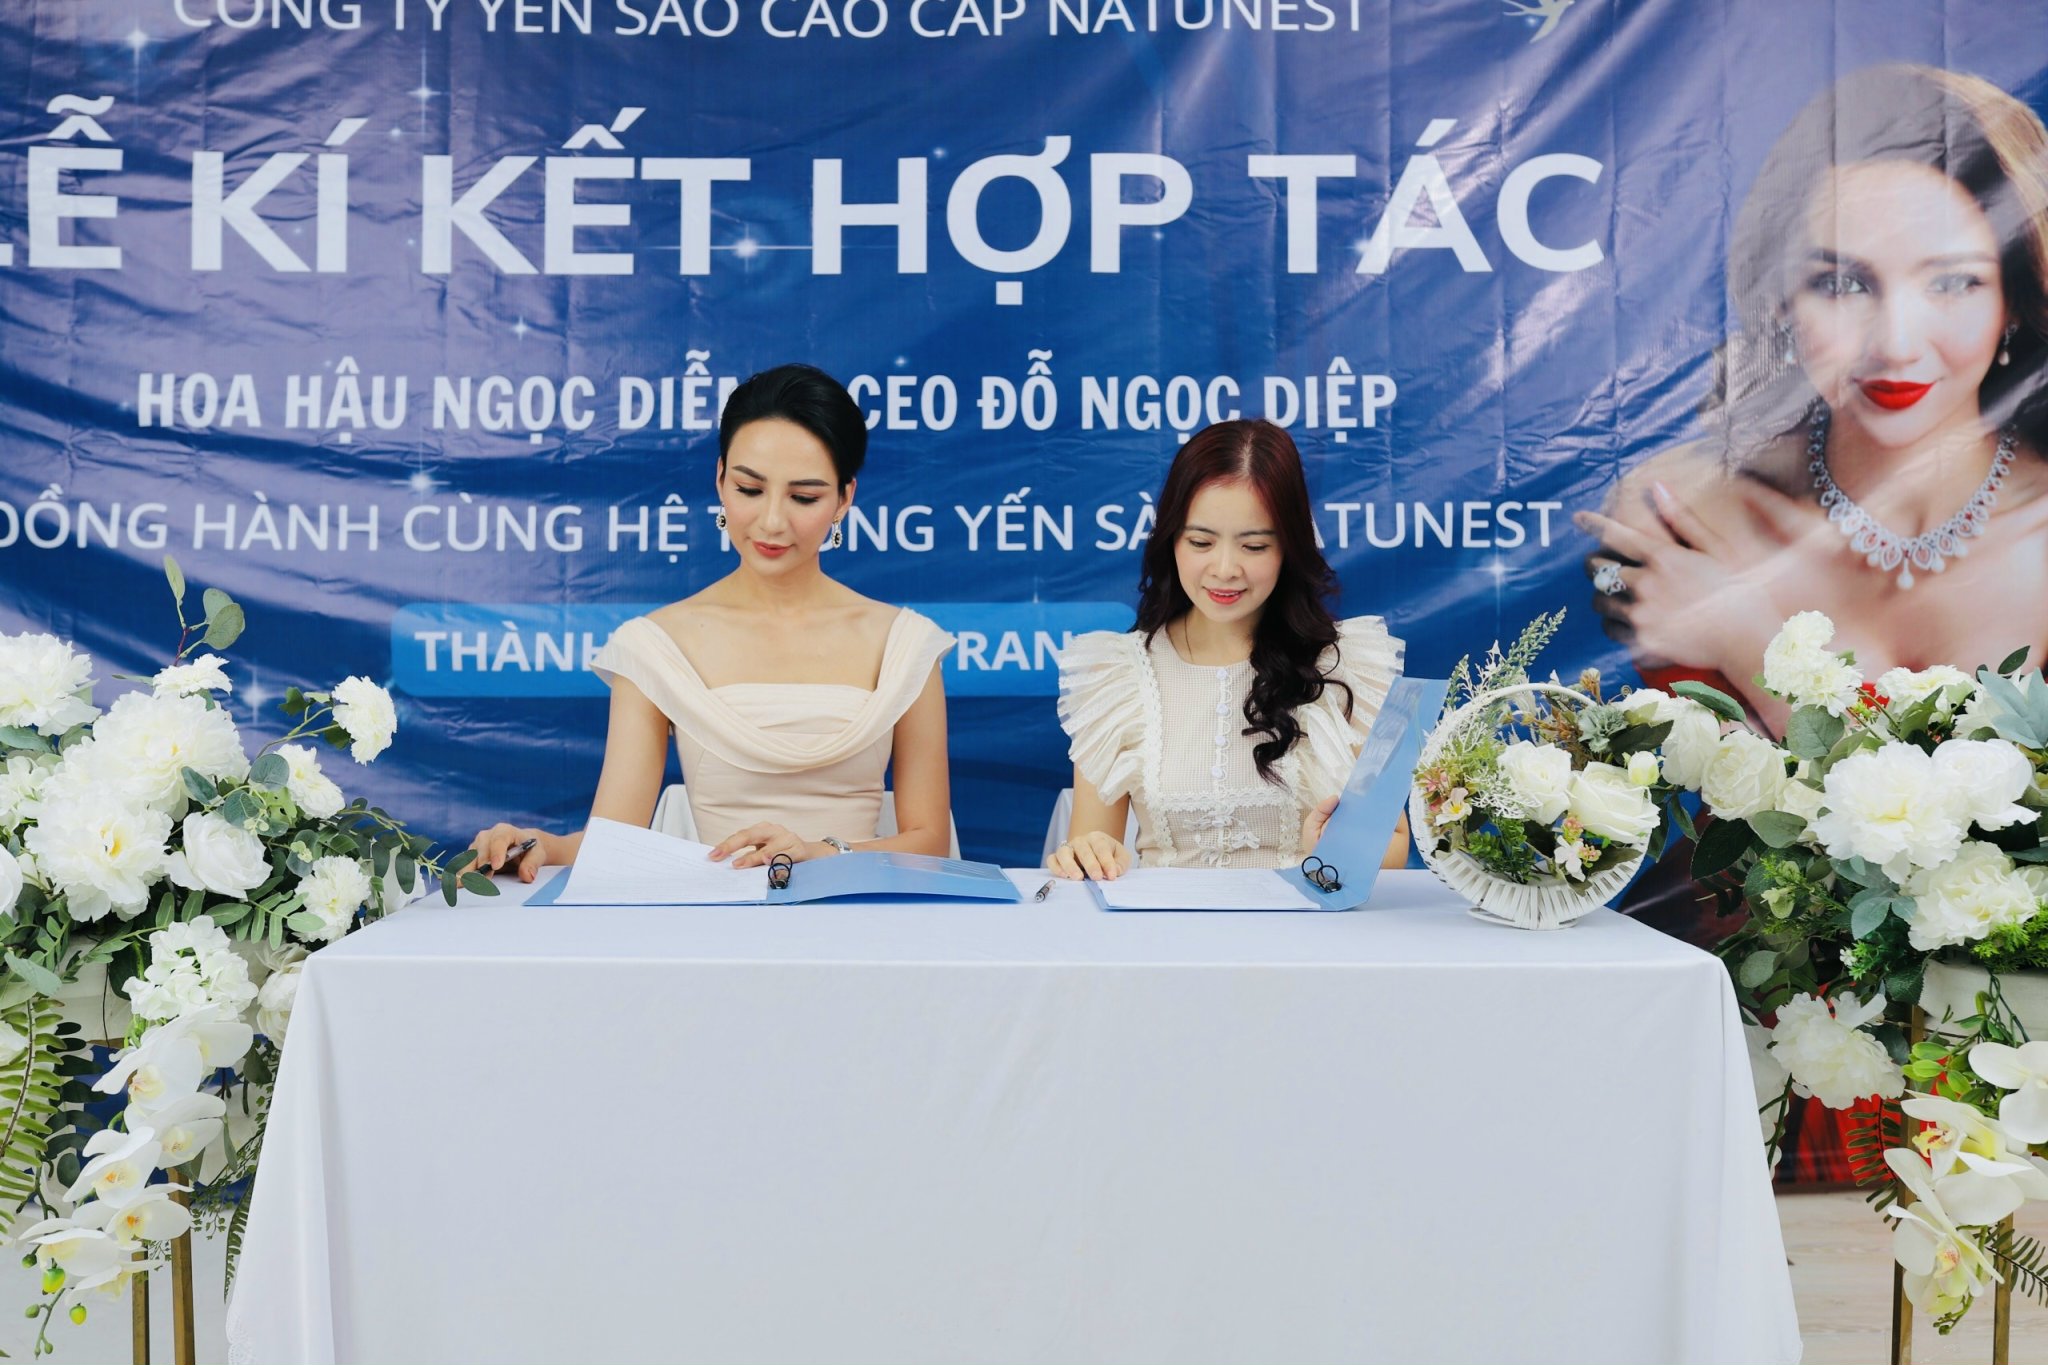 Hoa hậu Ngọc Diễm và CEO Đỗ Ngọc Diệp kí kết hợp tác